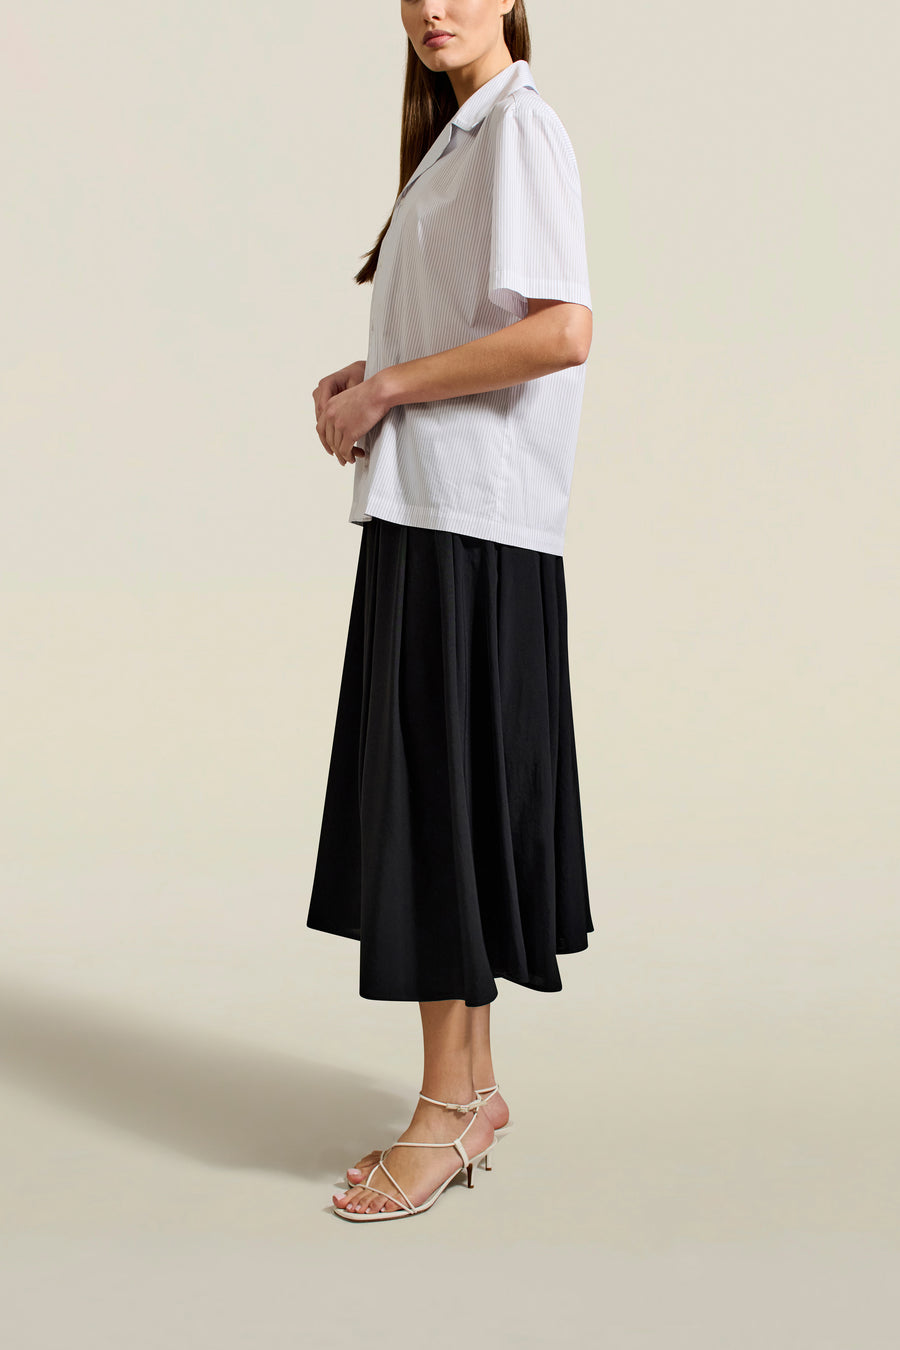 Dakota Pleated Skirt in Black Triacetate Twill